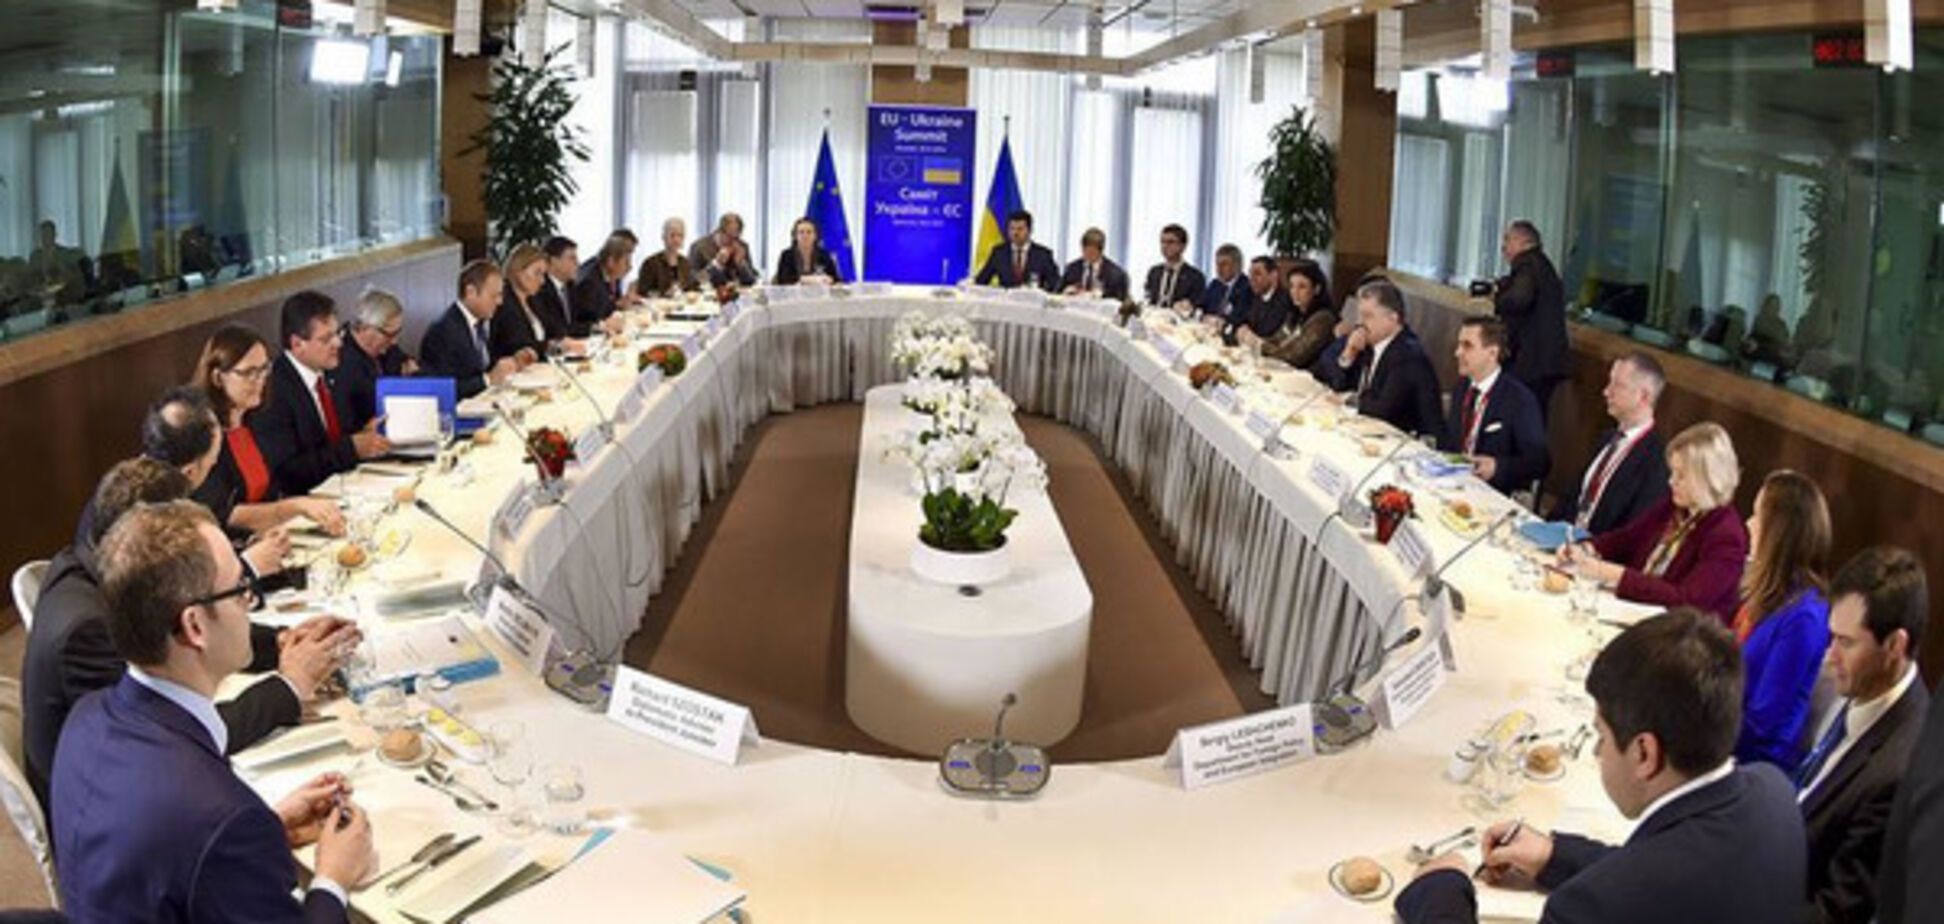 саміт Україна-ЄС